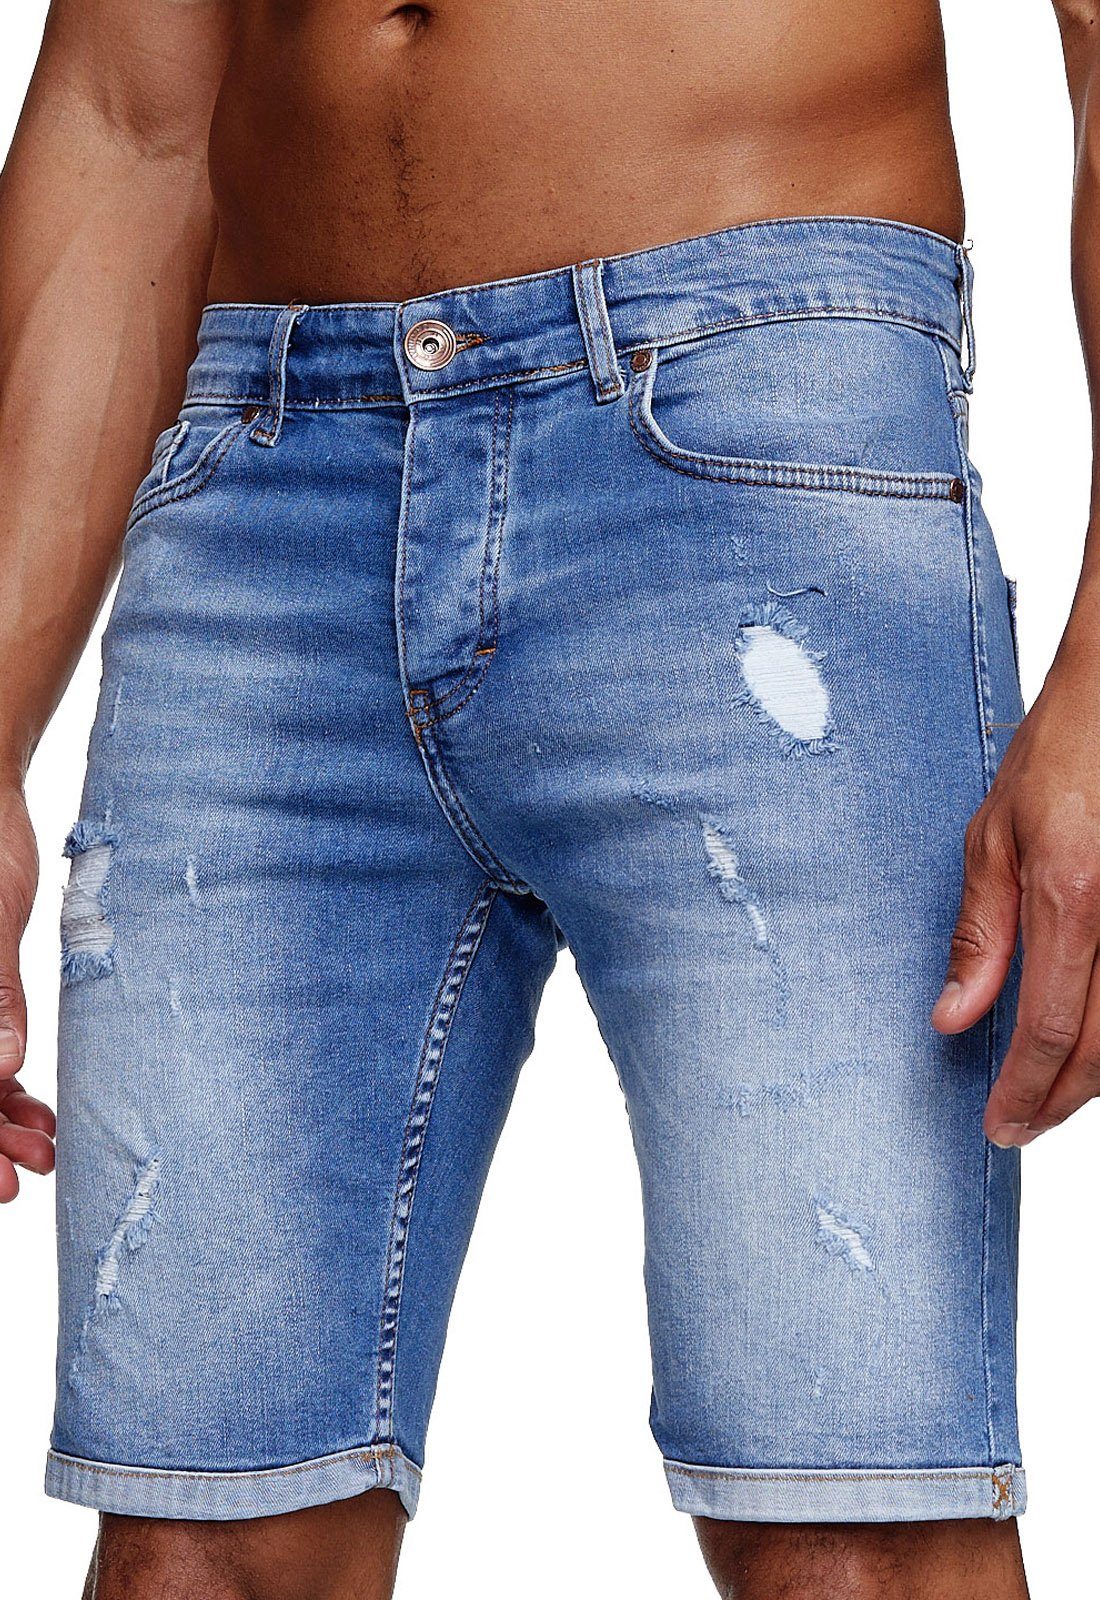 Reslad Jeansshorts Reslad Jeans Shorts Herren Kurze Hosen Sommer l Used Look Destroyed Destroyed Jeansbermudas Stretch Jeans-Hose mittelblau